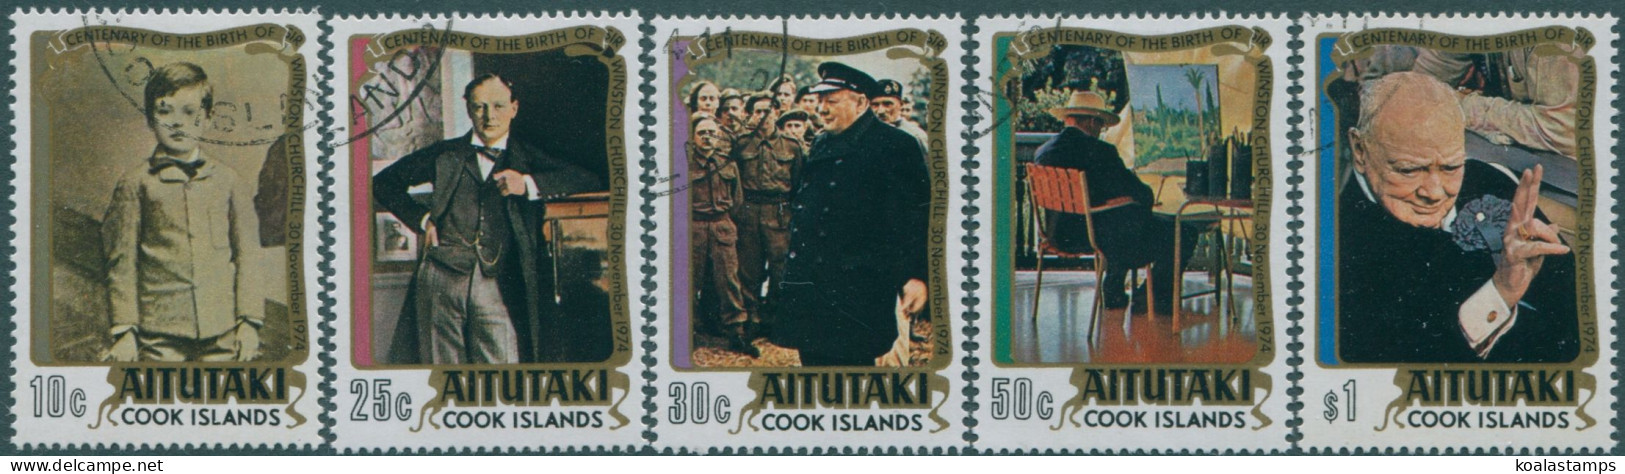 Aitutaki 1974 SG136-140 Winston Churchill Set FU - Cook Islands